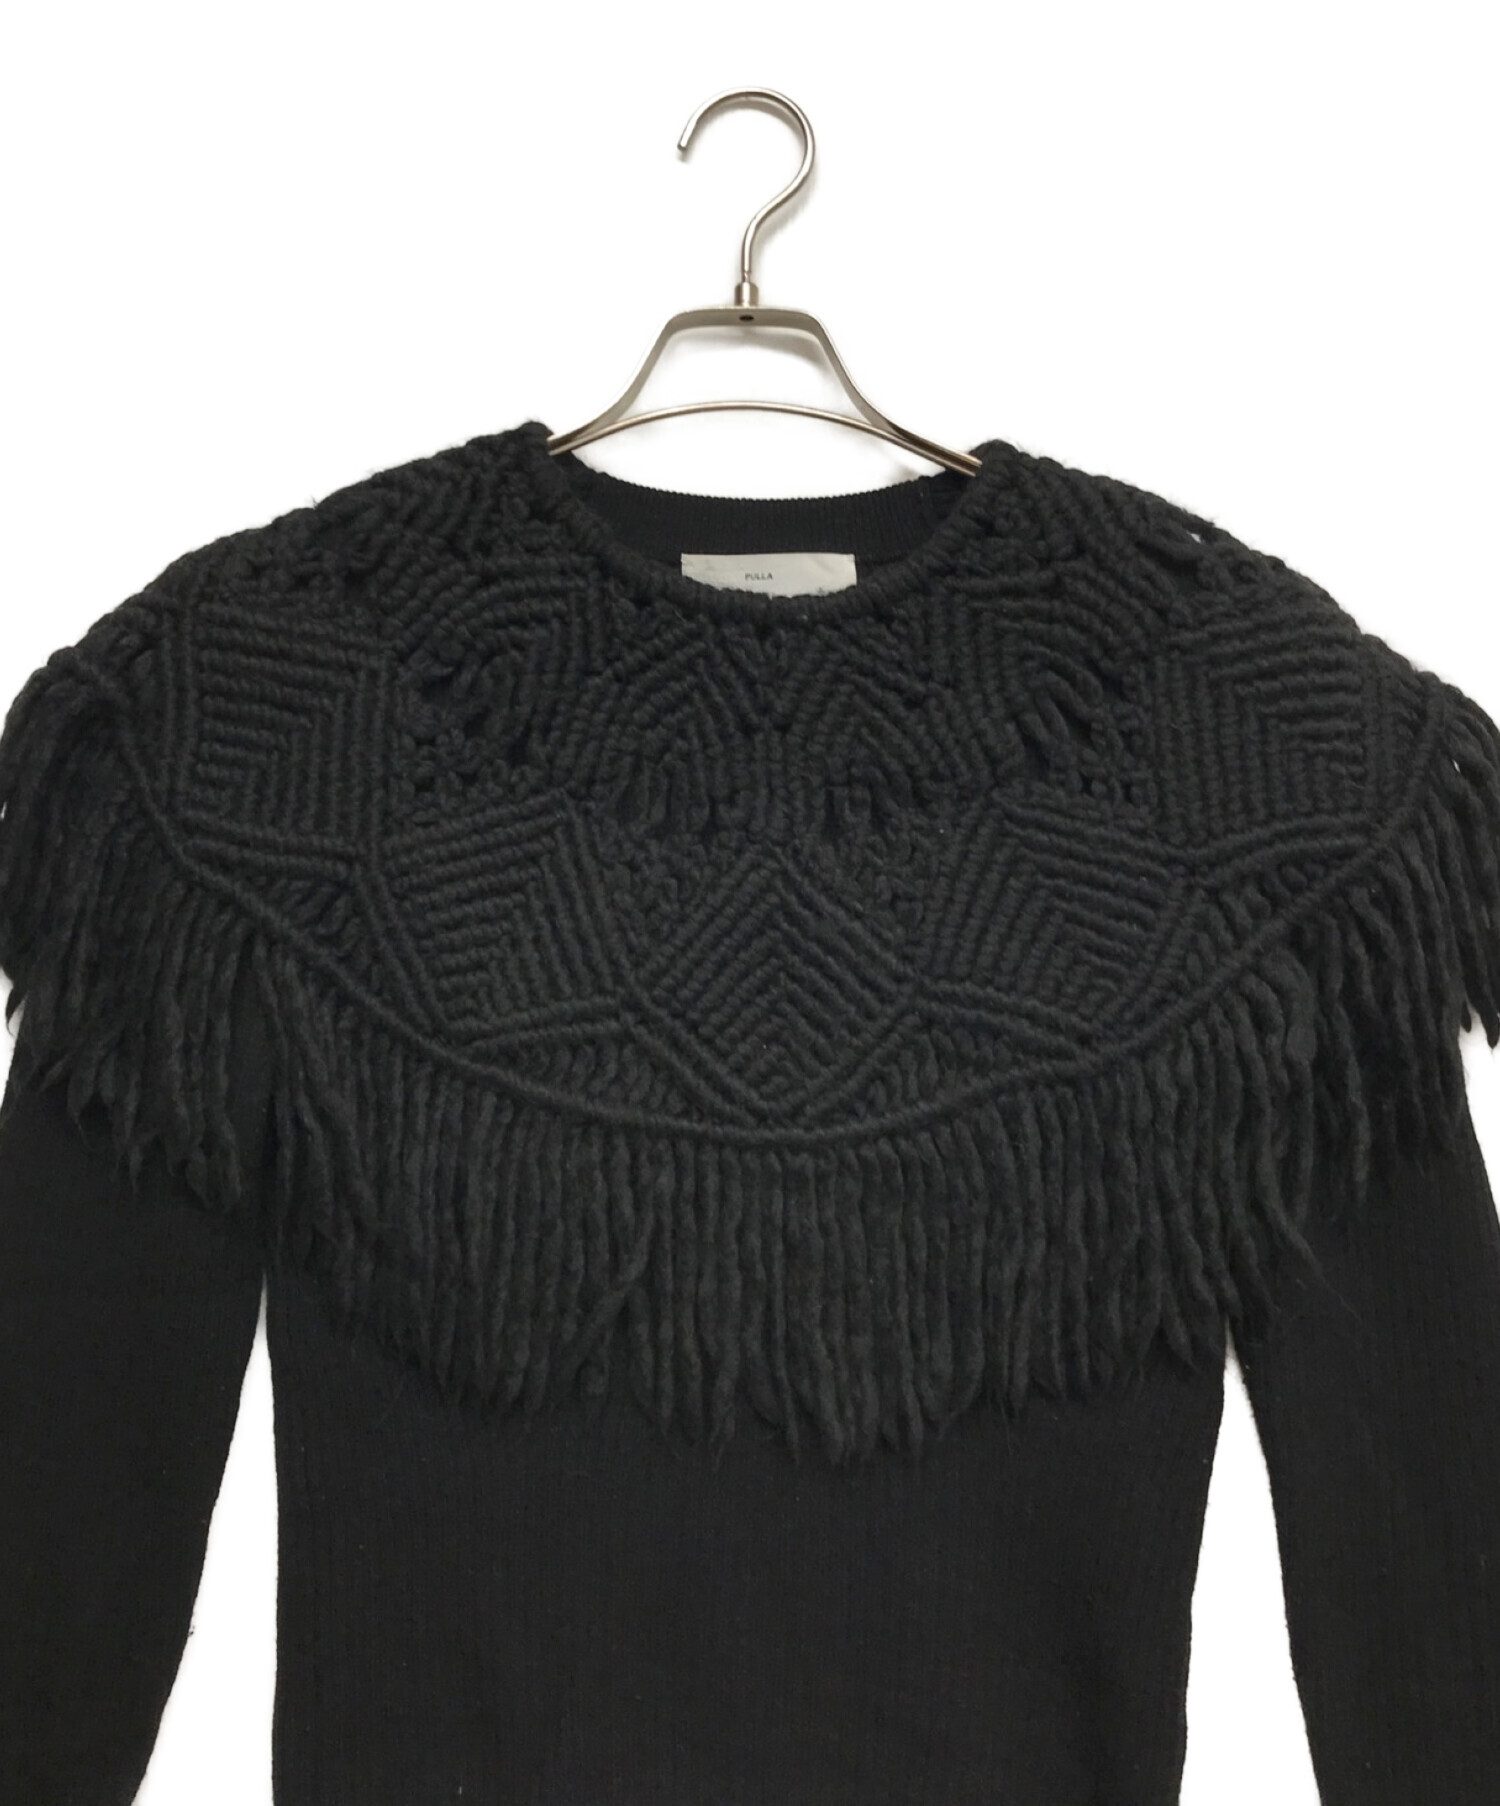 TOGA PULLA (トーガ プルラ) Lowgauge Knit Top ブラック サイズ:36